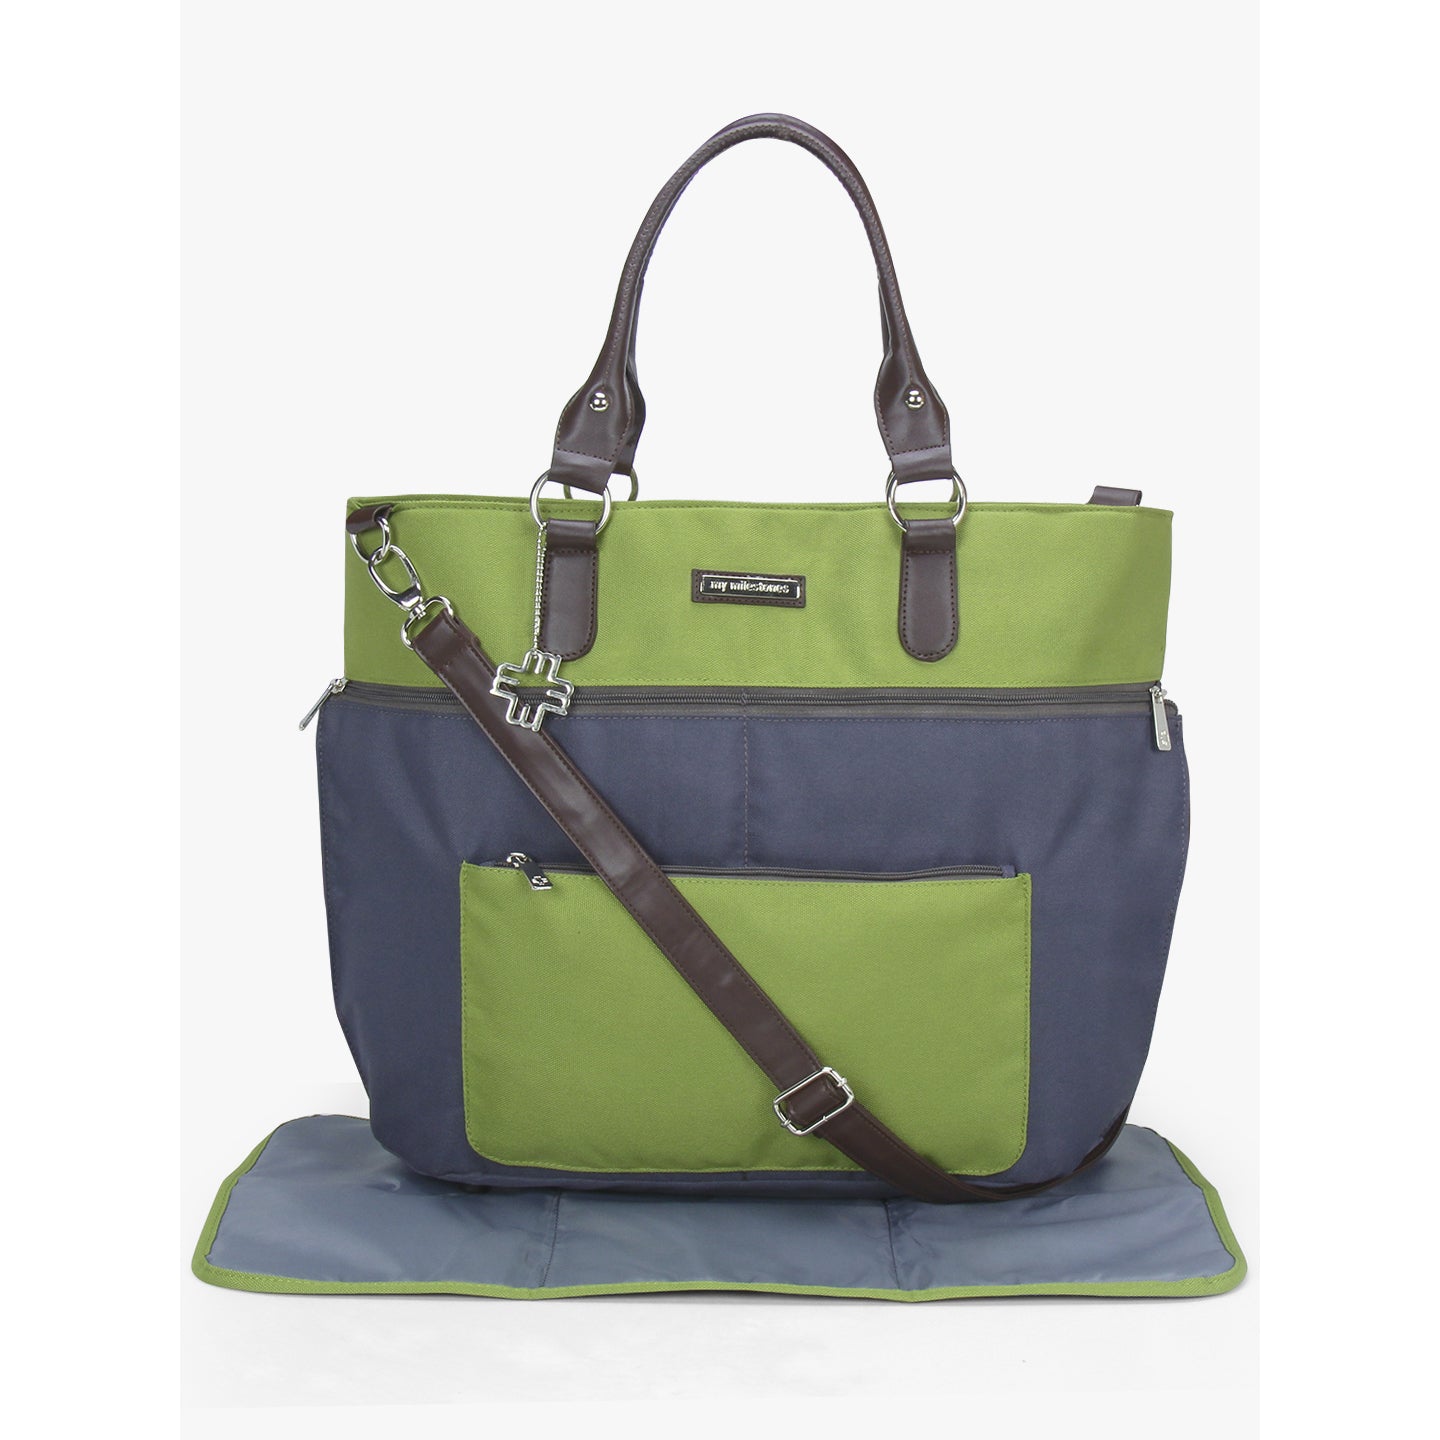 My Milestones Diaper Bag Traveler - Grey/Green